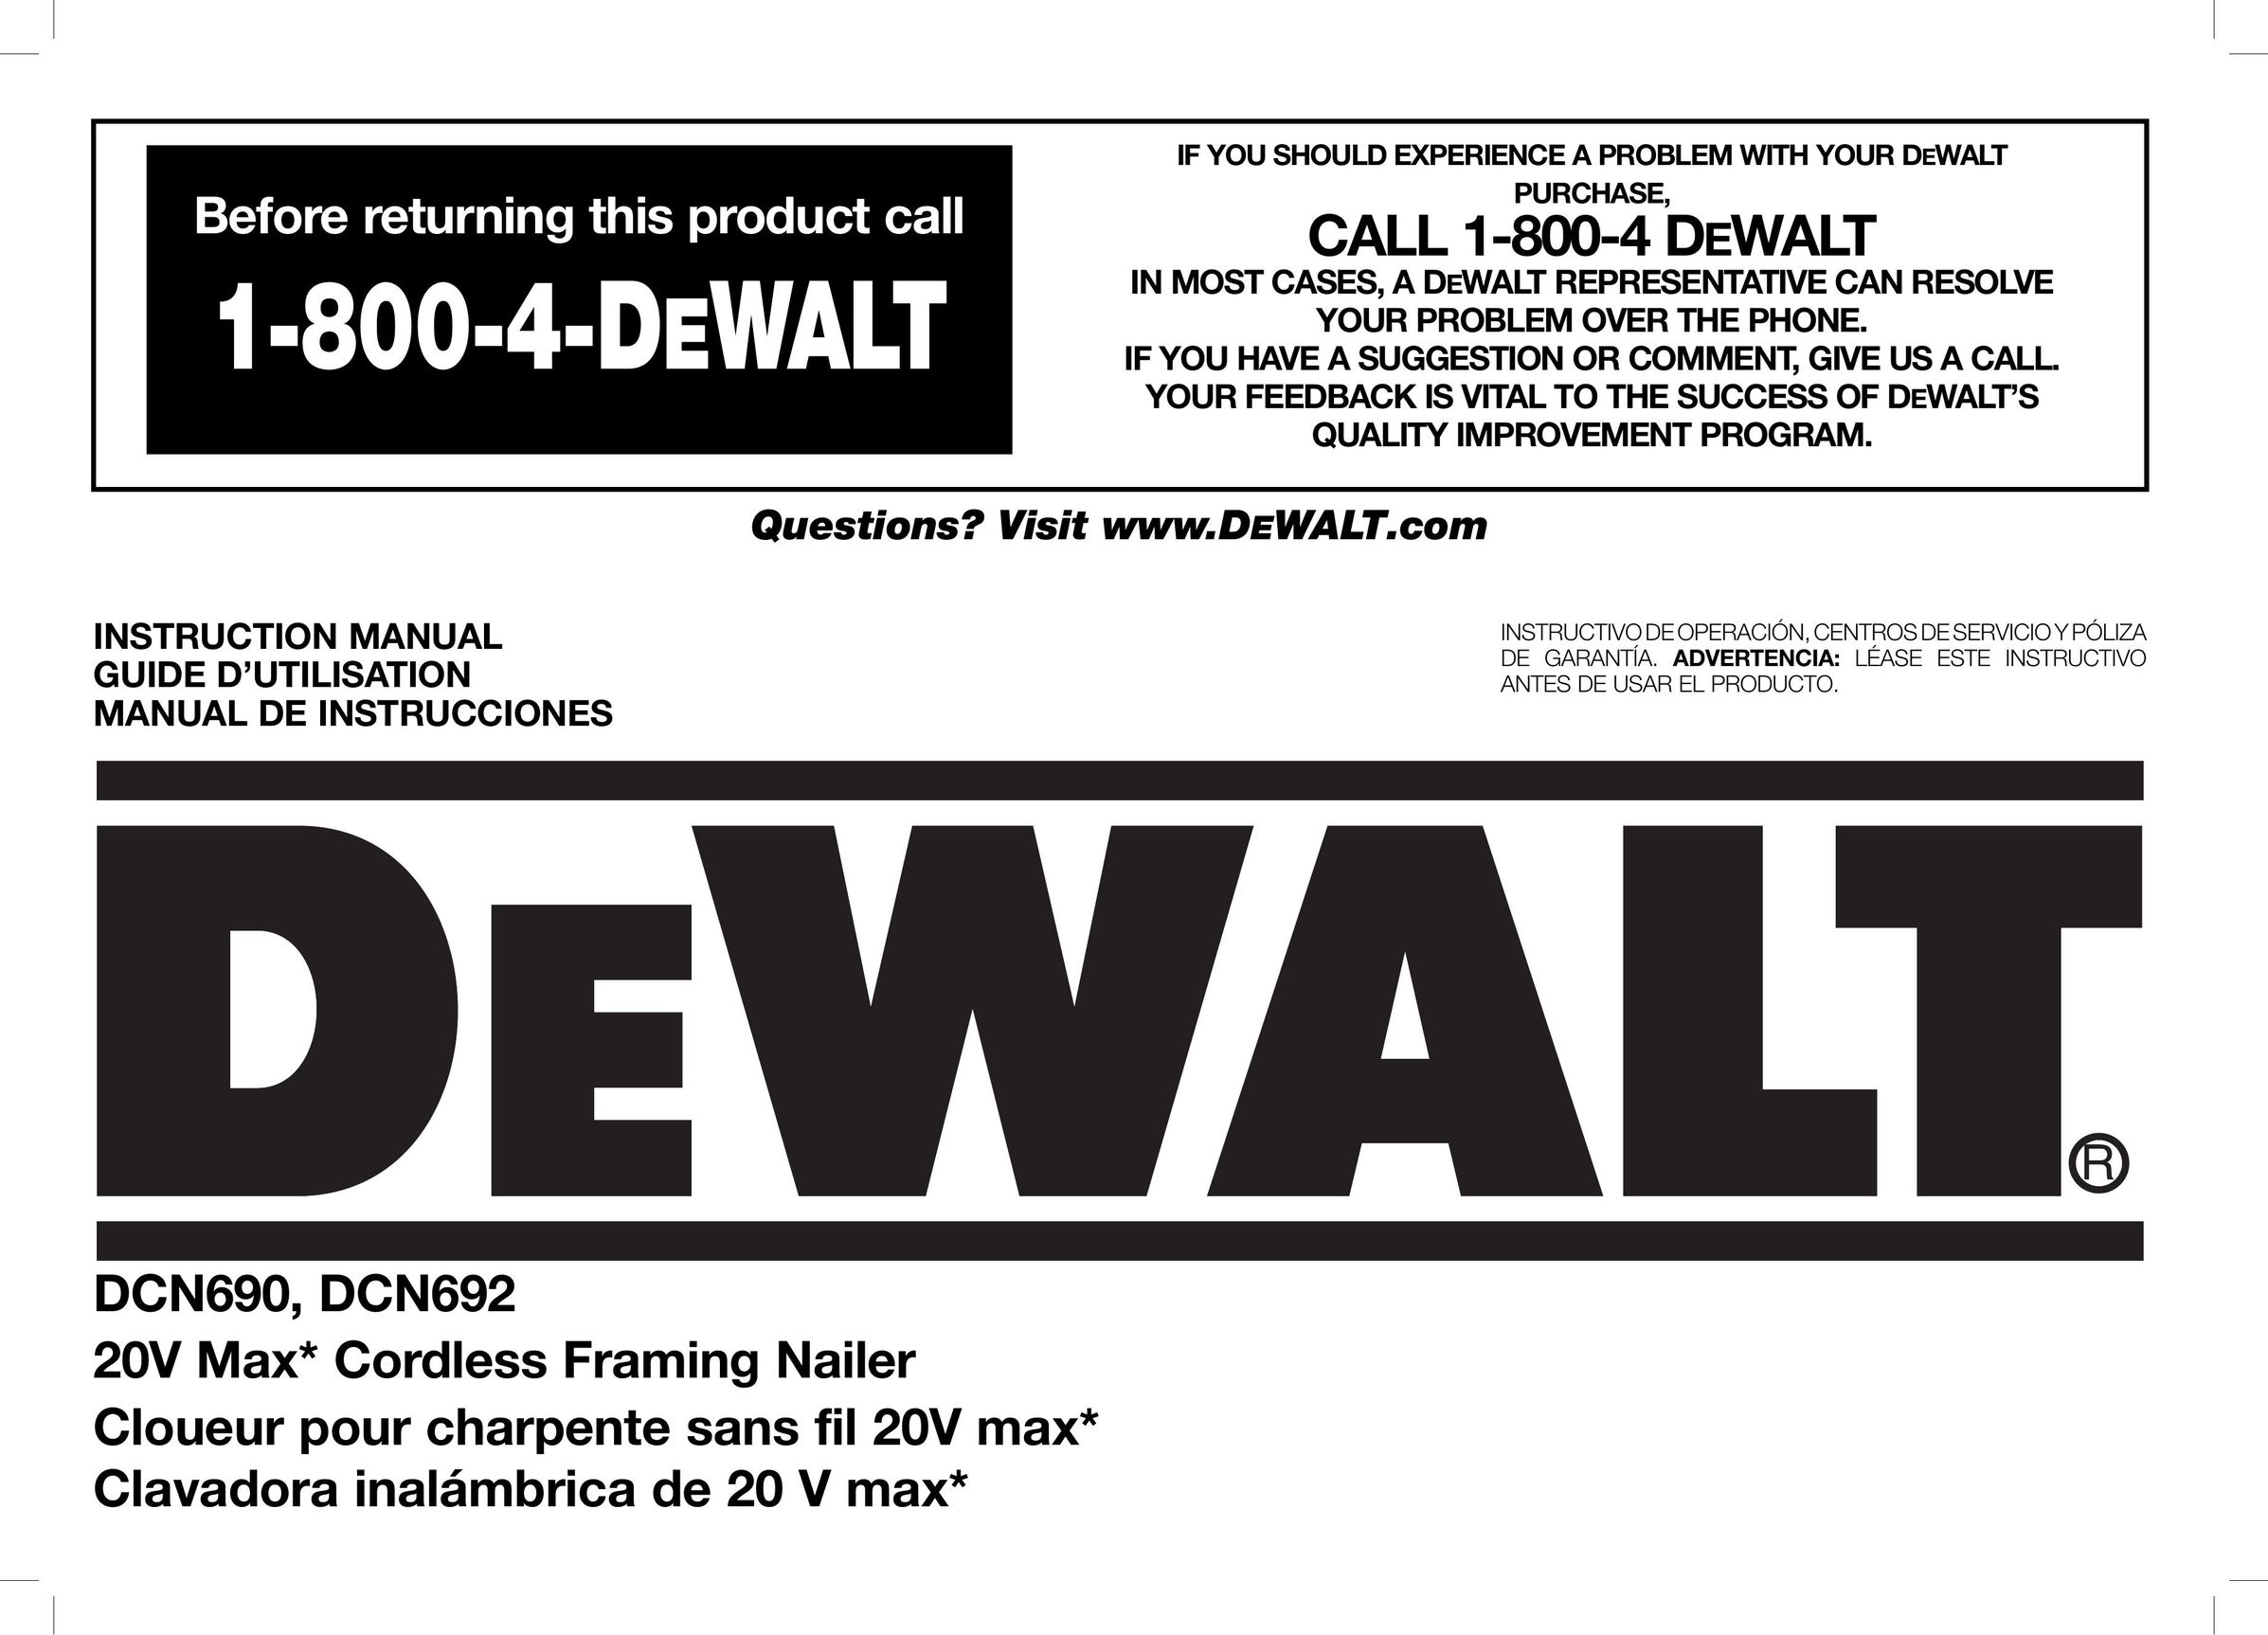 DeWalt DCN690 Nail Gun User Manual